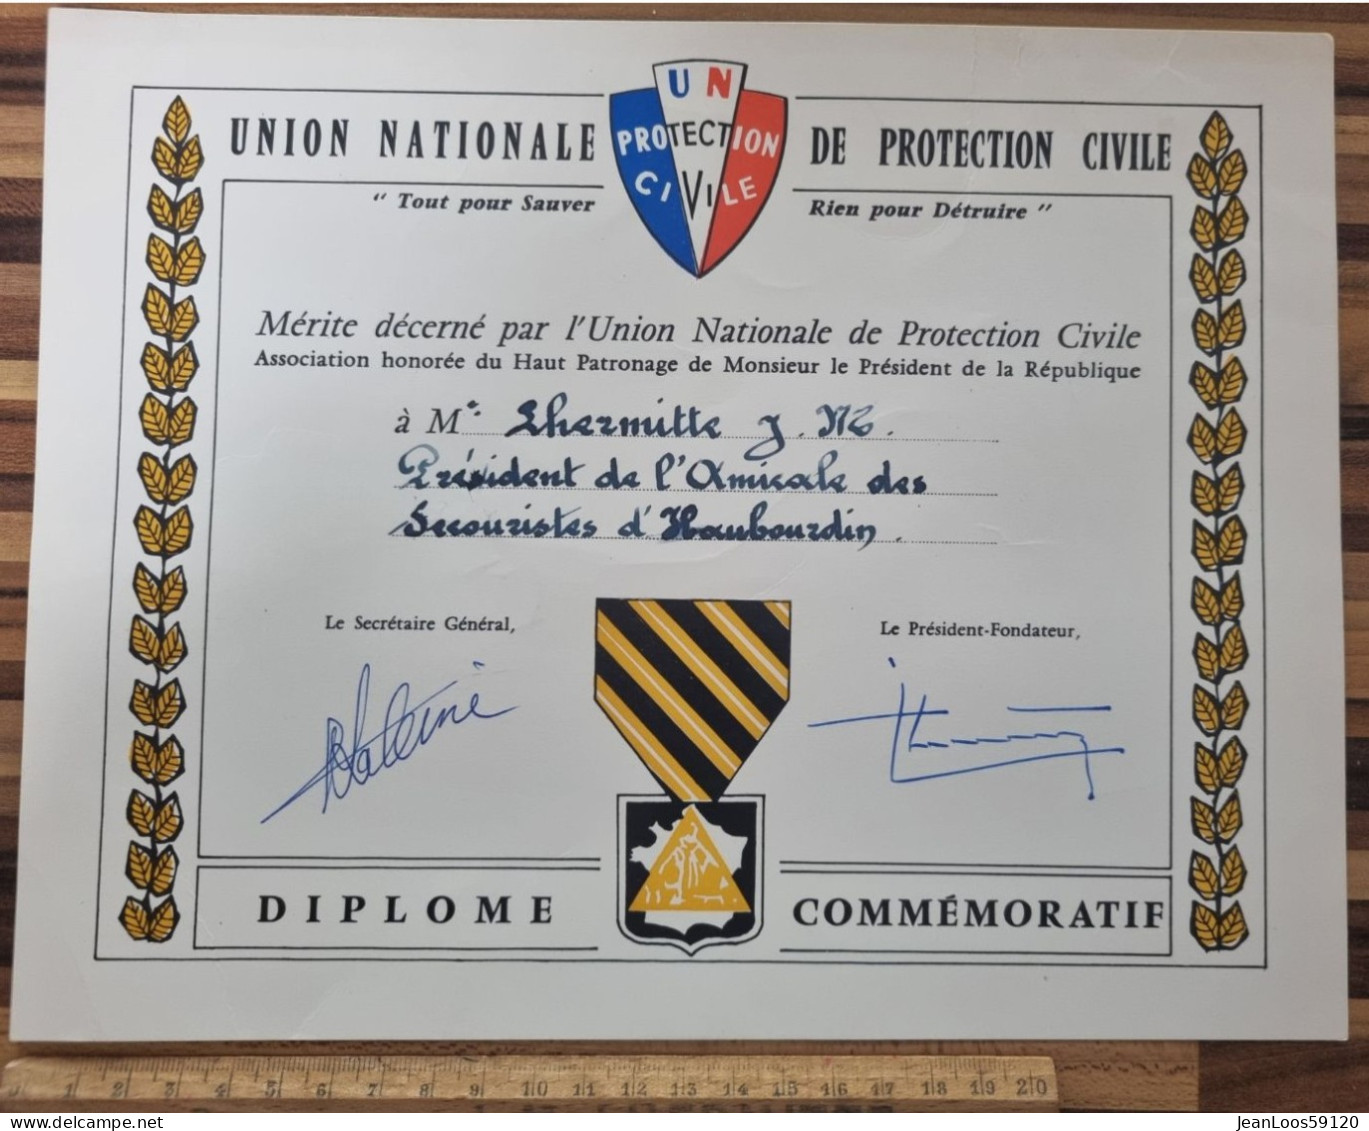 Diplome De Secouriste De La Protection Civile 1980 - Ministère De L'intérieur - Service National - Etabli à Haubourdin - Lidmaatschapskaarten